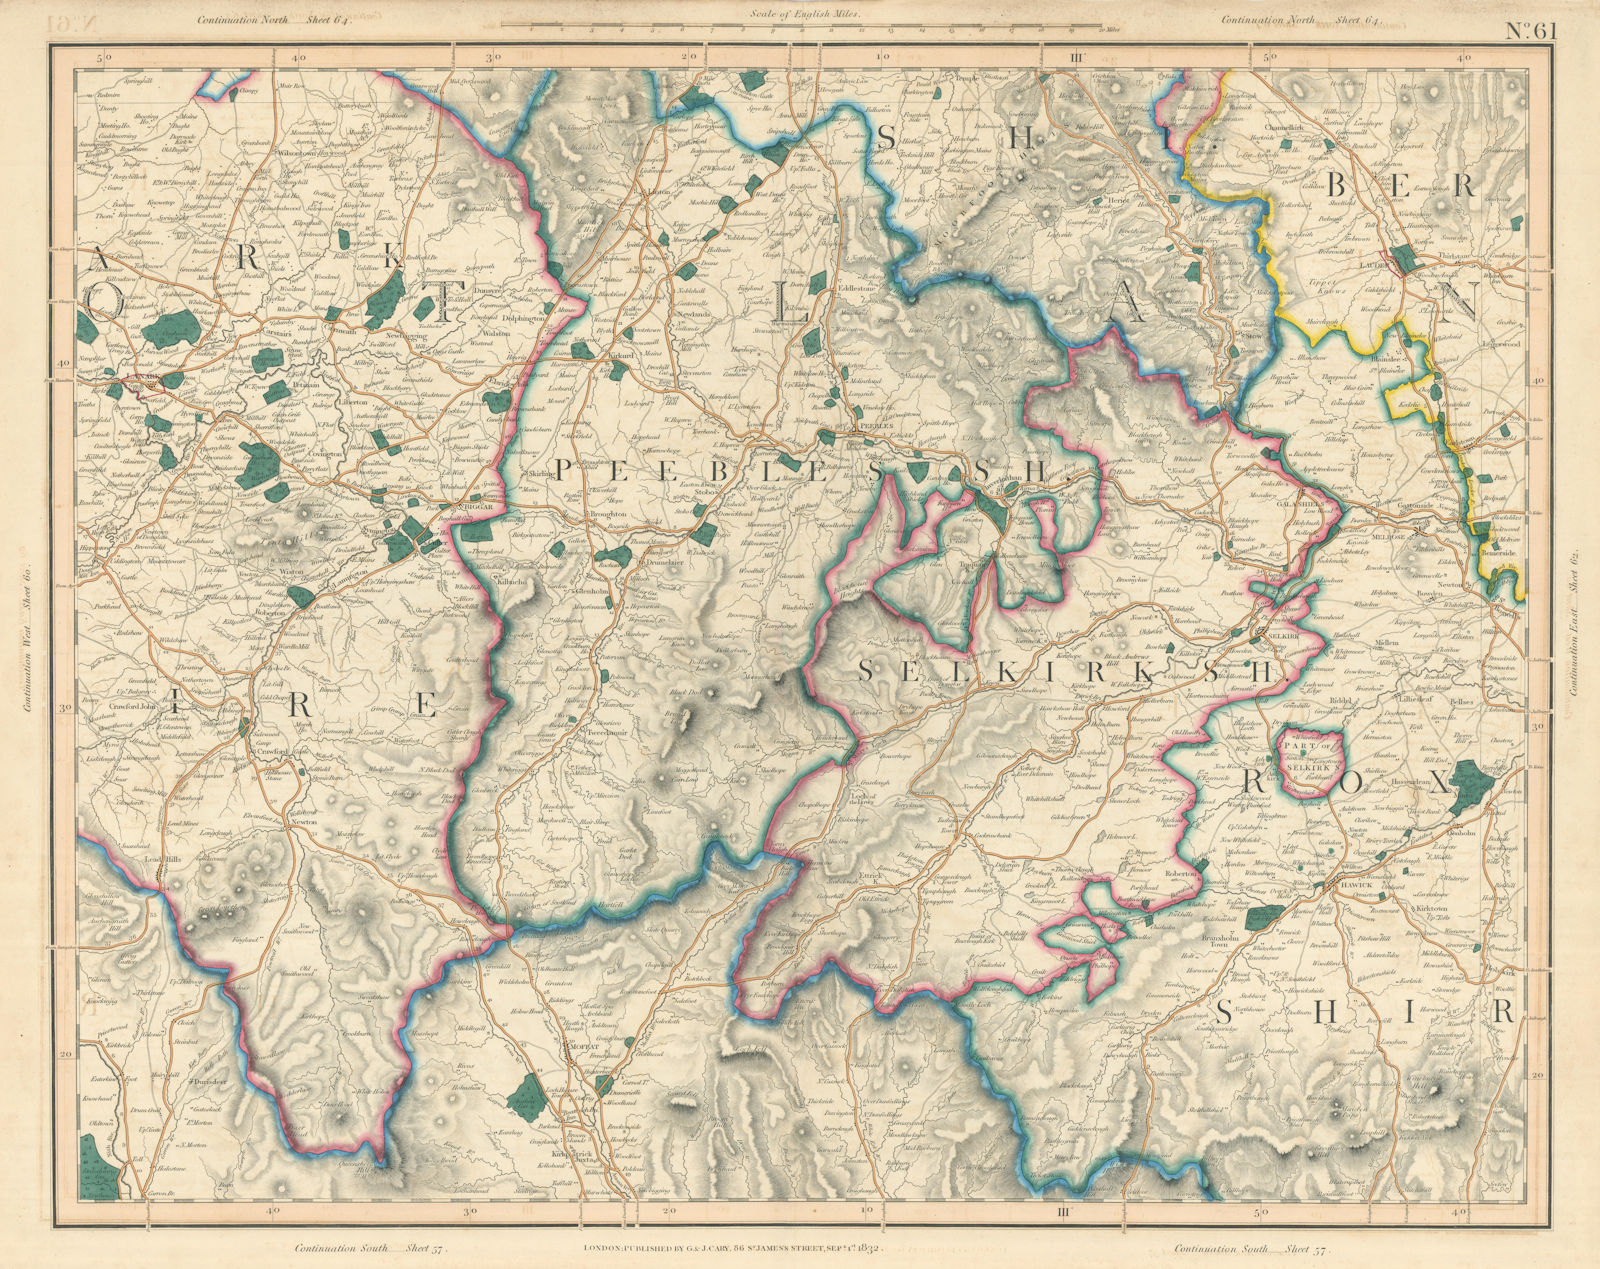 SCOTTISH BORDERS. Peebles-shire & Selkirkshire, East Lanarkshire. CARY 1832 map